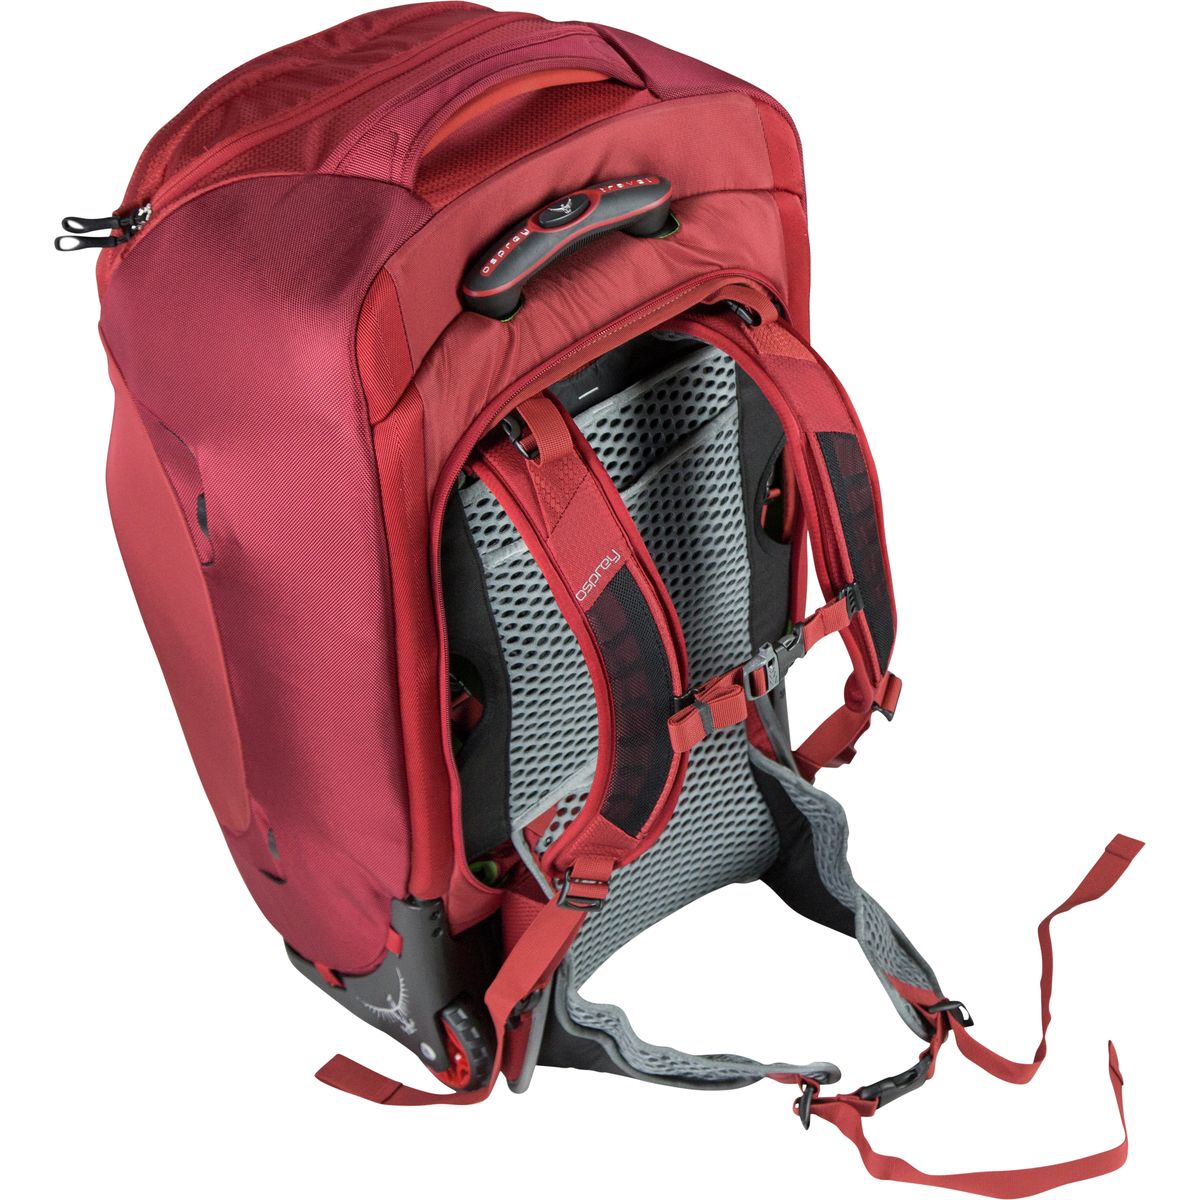 Osprey Packs Sojourn Rolling Gear Bag - Travel